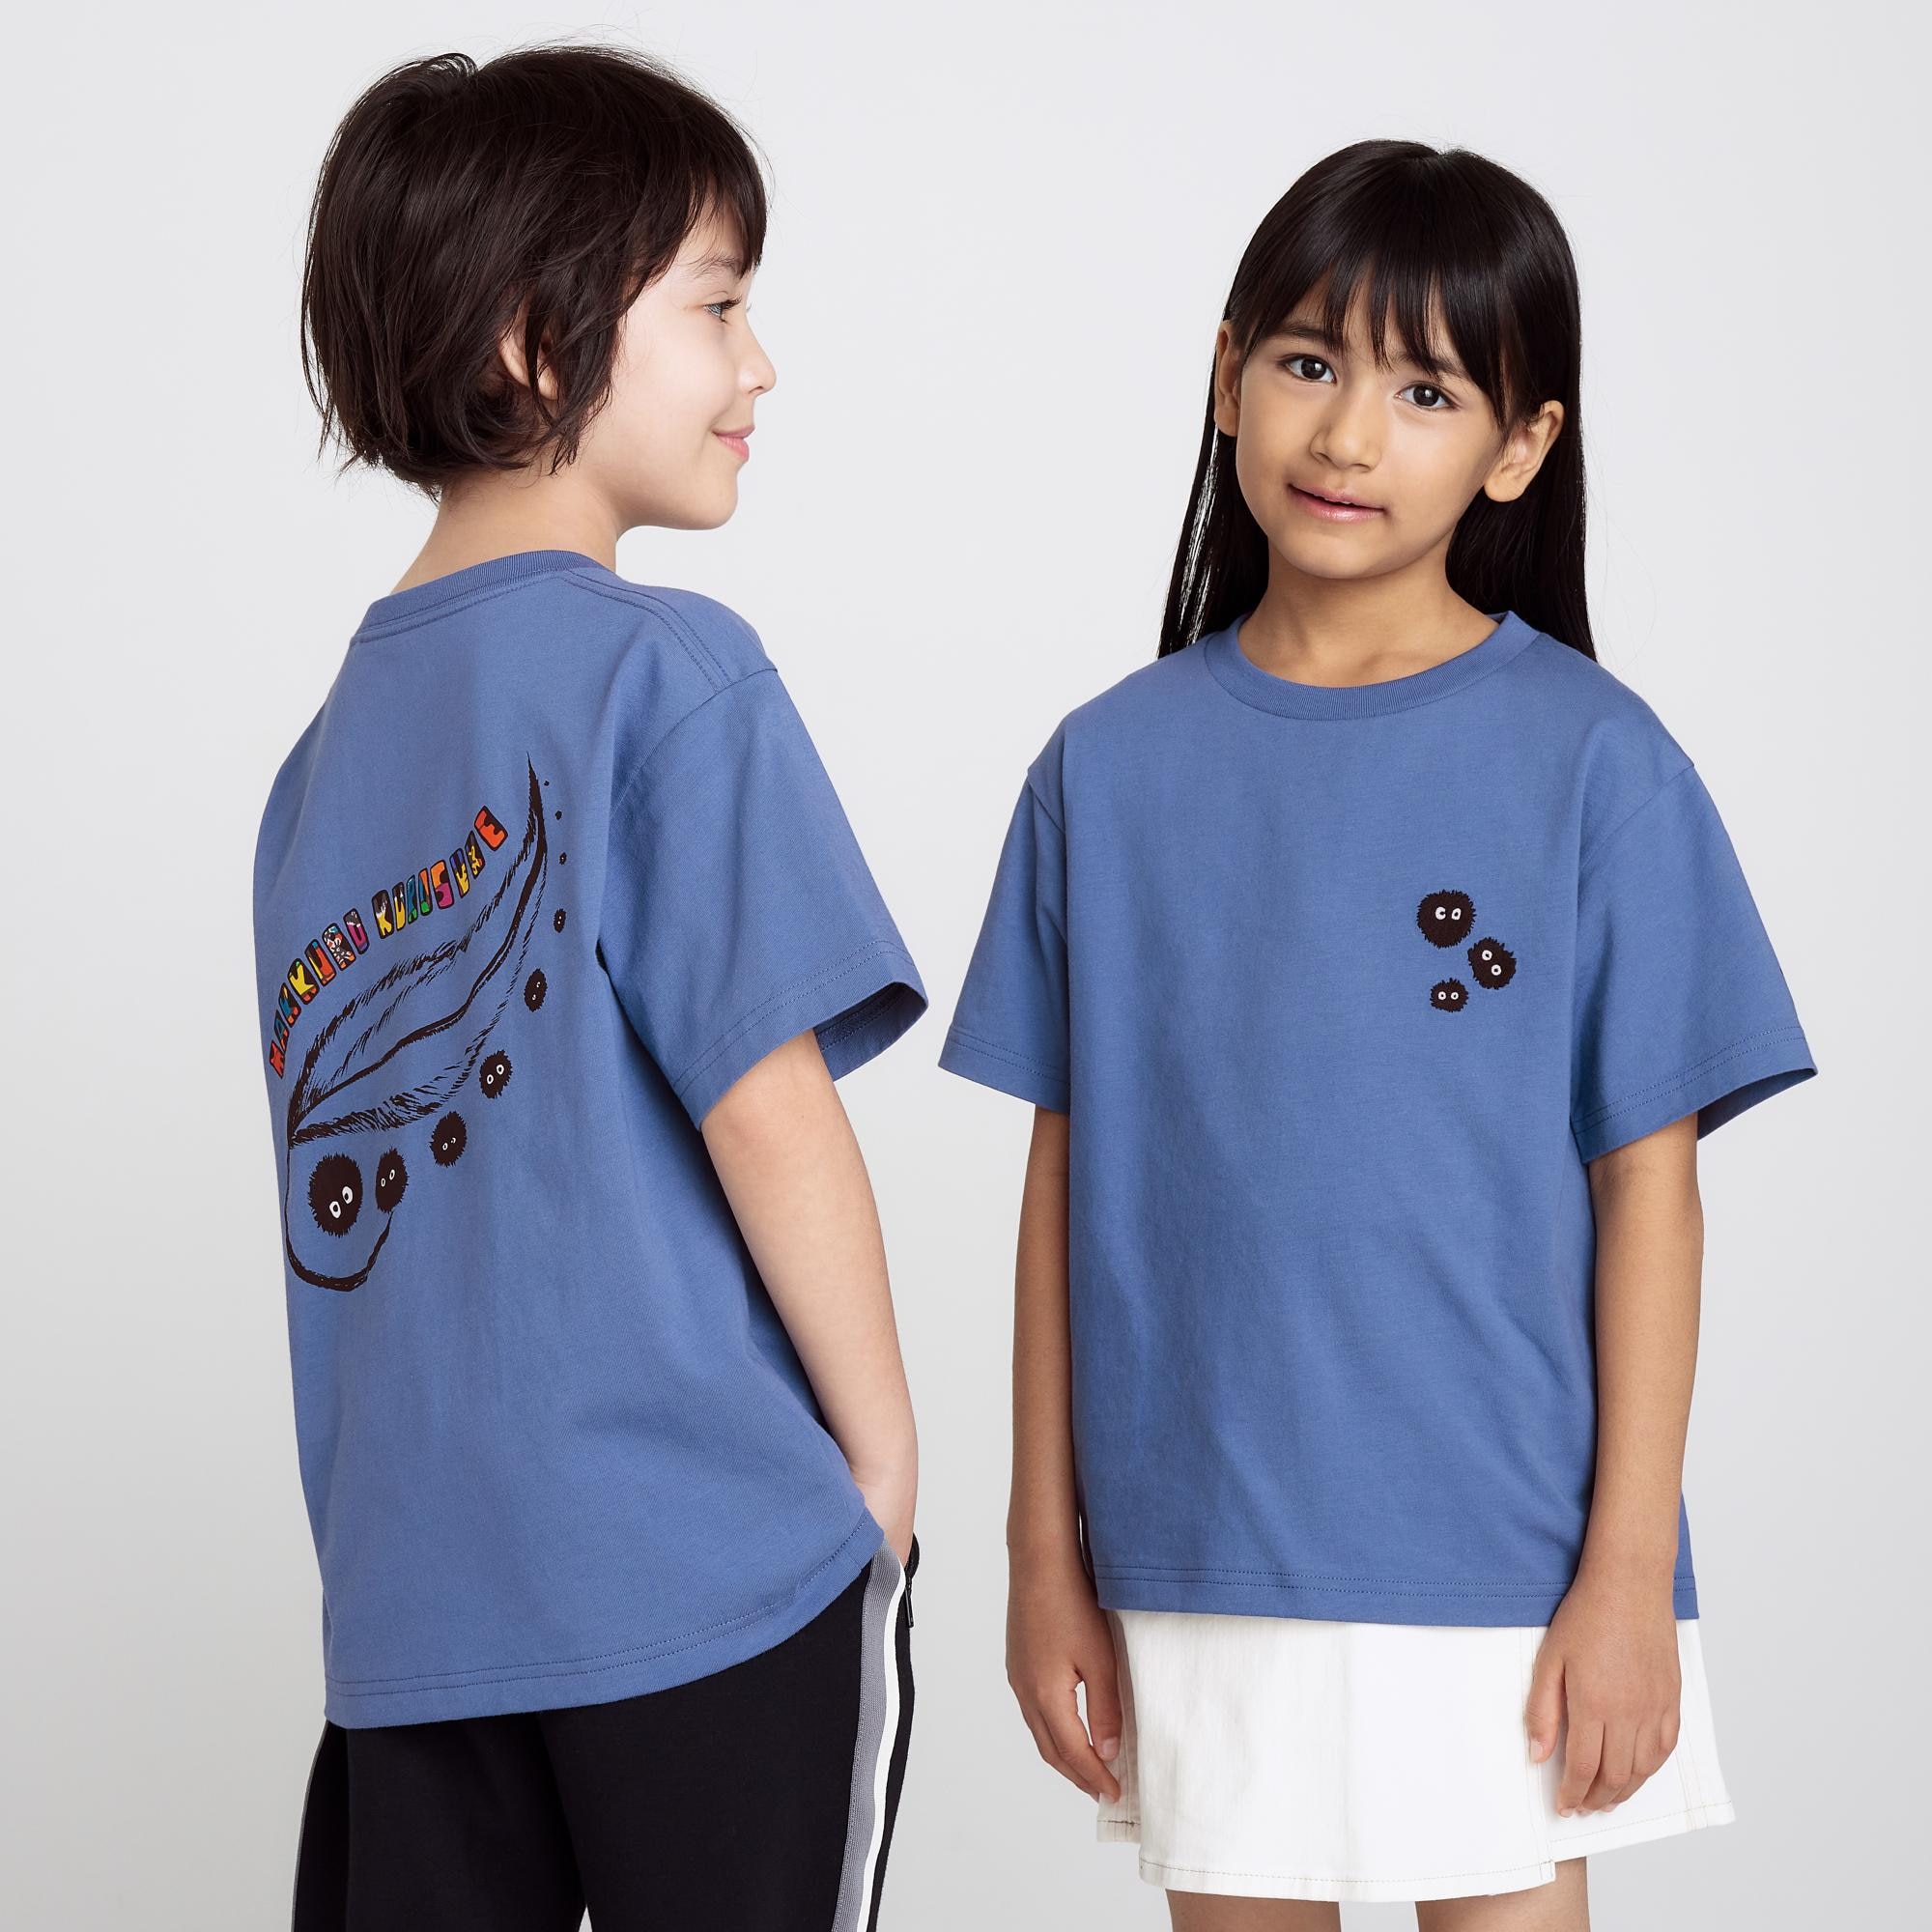 Футболка UNIQLO Kids Studio Ghibli Ut с коротким рукавом и рисунком, синий фото